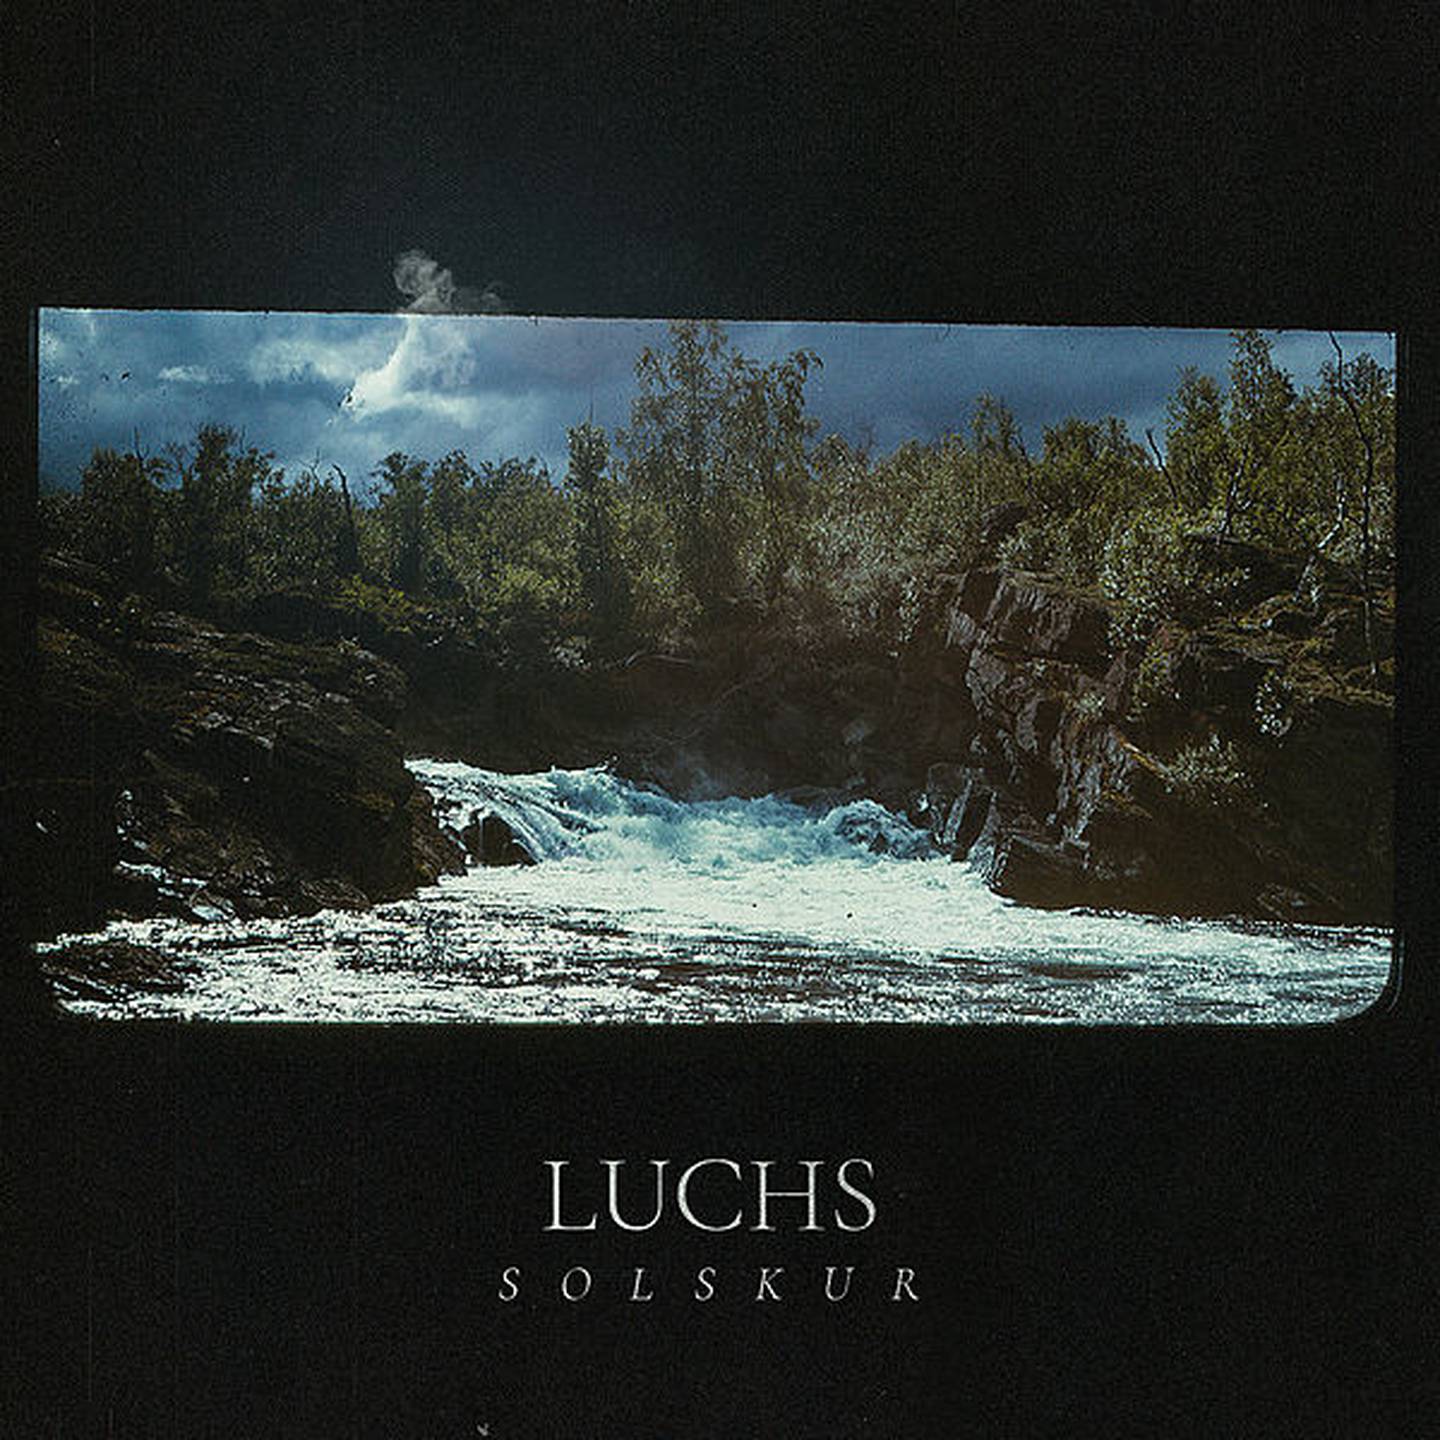 Luchs "Solskur" Skivomslag (2020). Artist och kompositör är Patrik Berg Almkvisth.